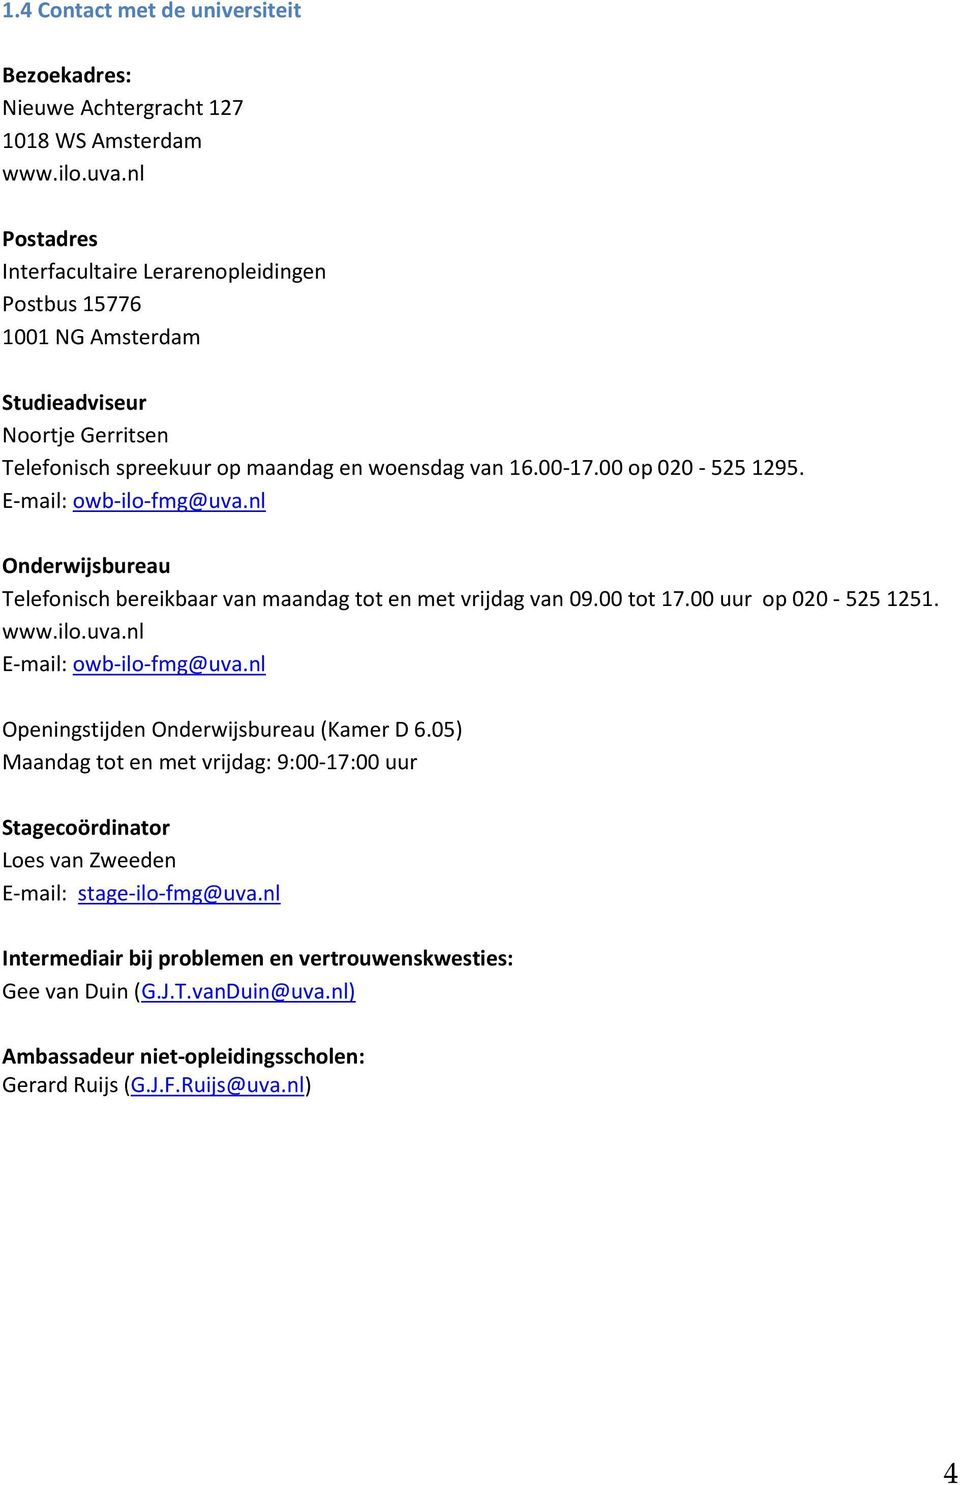 E-mail: owb-ilo-fmg@uva.nl Onderwijsbureau Telefonisch bereikbaar van maandag tot en met vrijdag van 09.00 tot 17.00 uur op 020-525 1251. www.ilo.uva.nl E-mail: owb-ilo-fmg@uva.